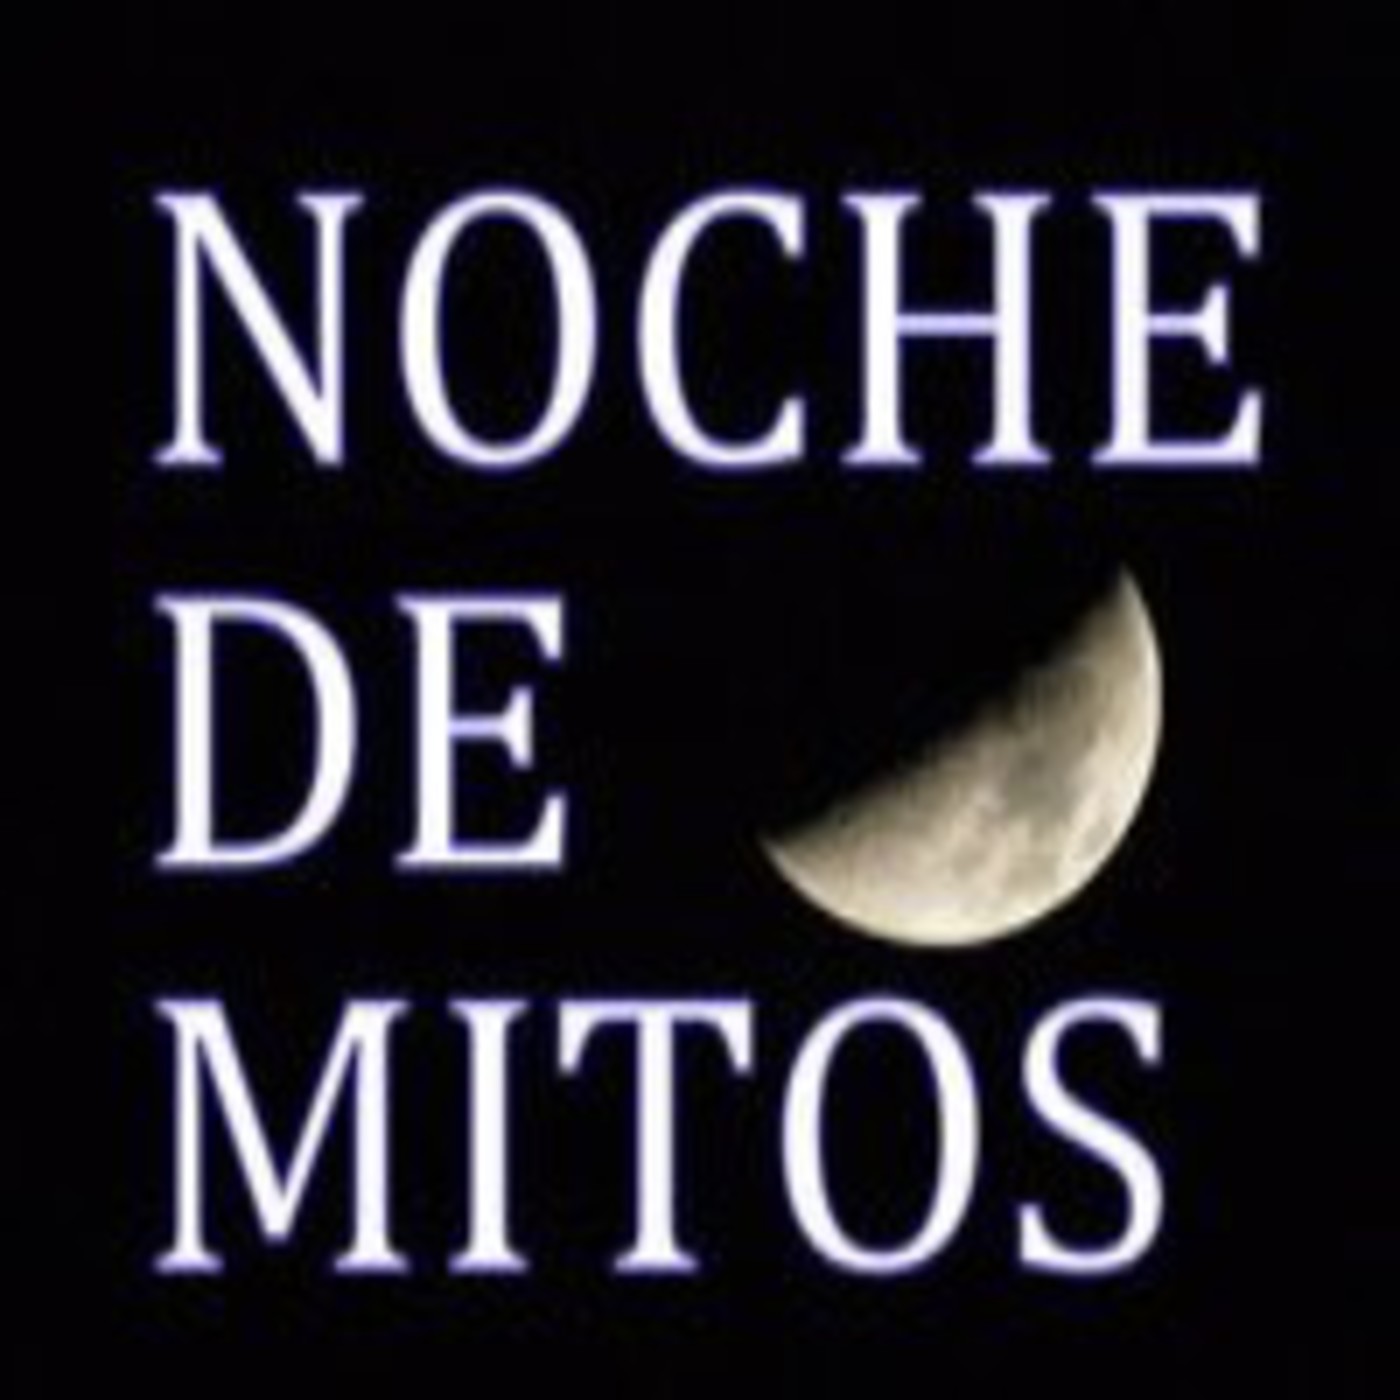 Noche de Mitos (9) Mitos poco contados de apariciones fantasmales,Noche de investigación, momias de St Michan´s Church